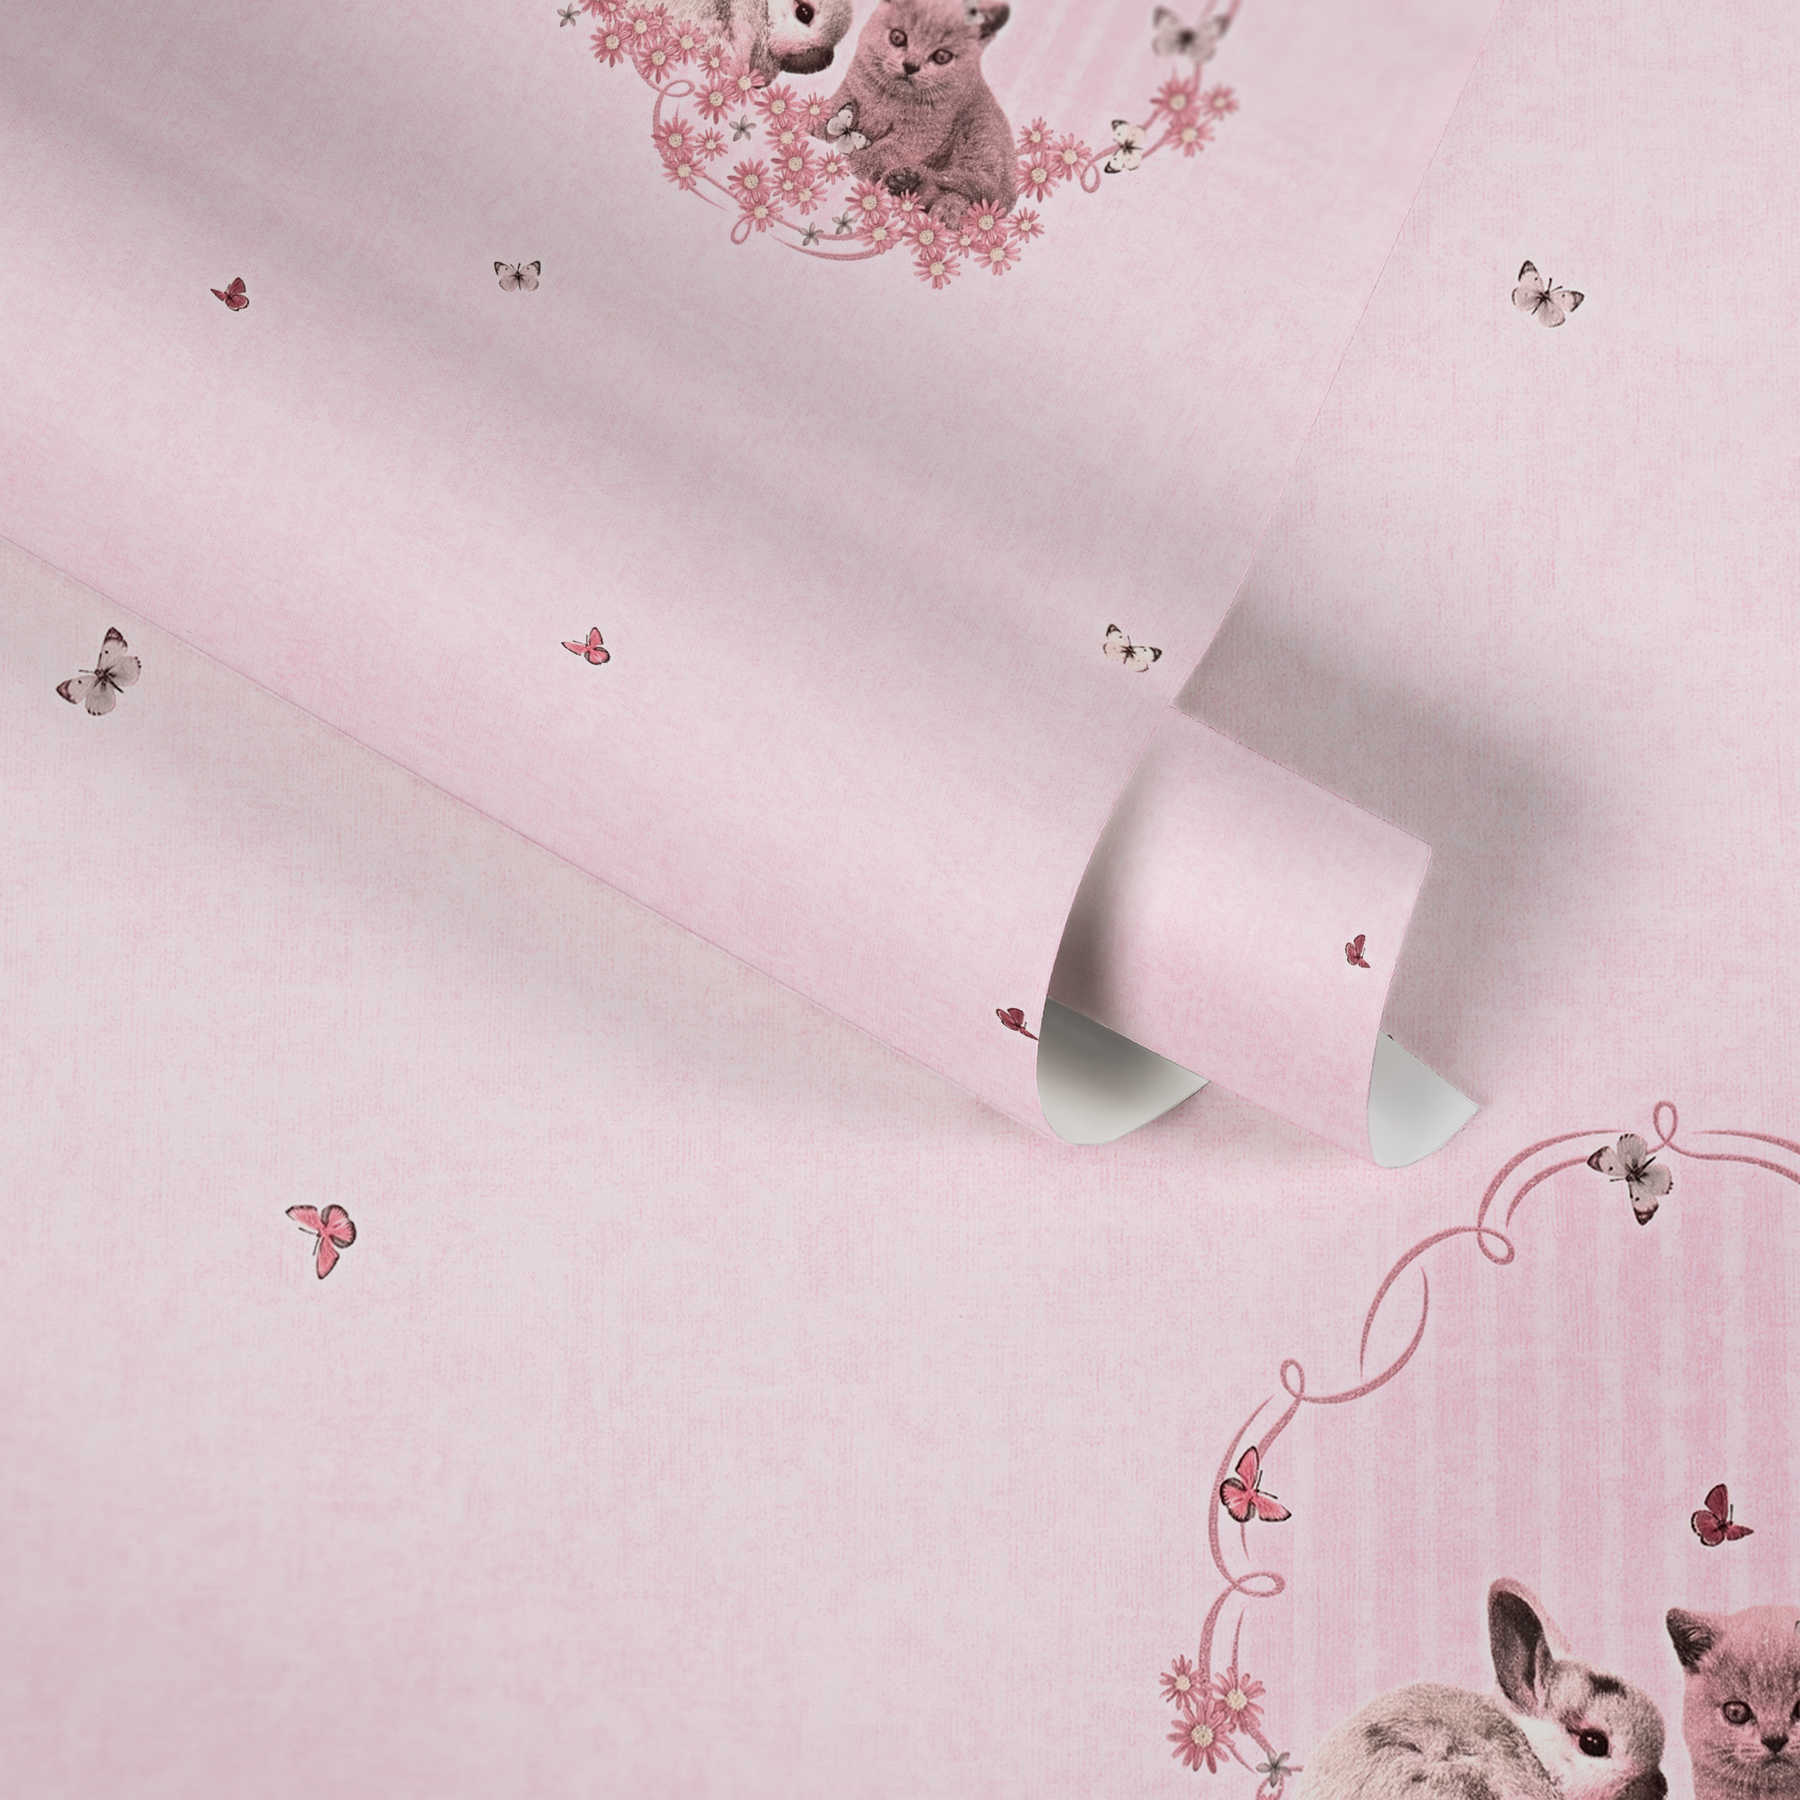             Wallpaper for girls cats, bunny & butterflies - pink
        